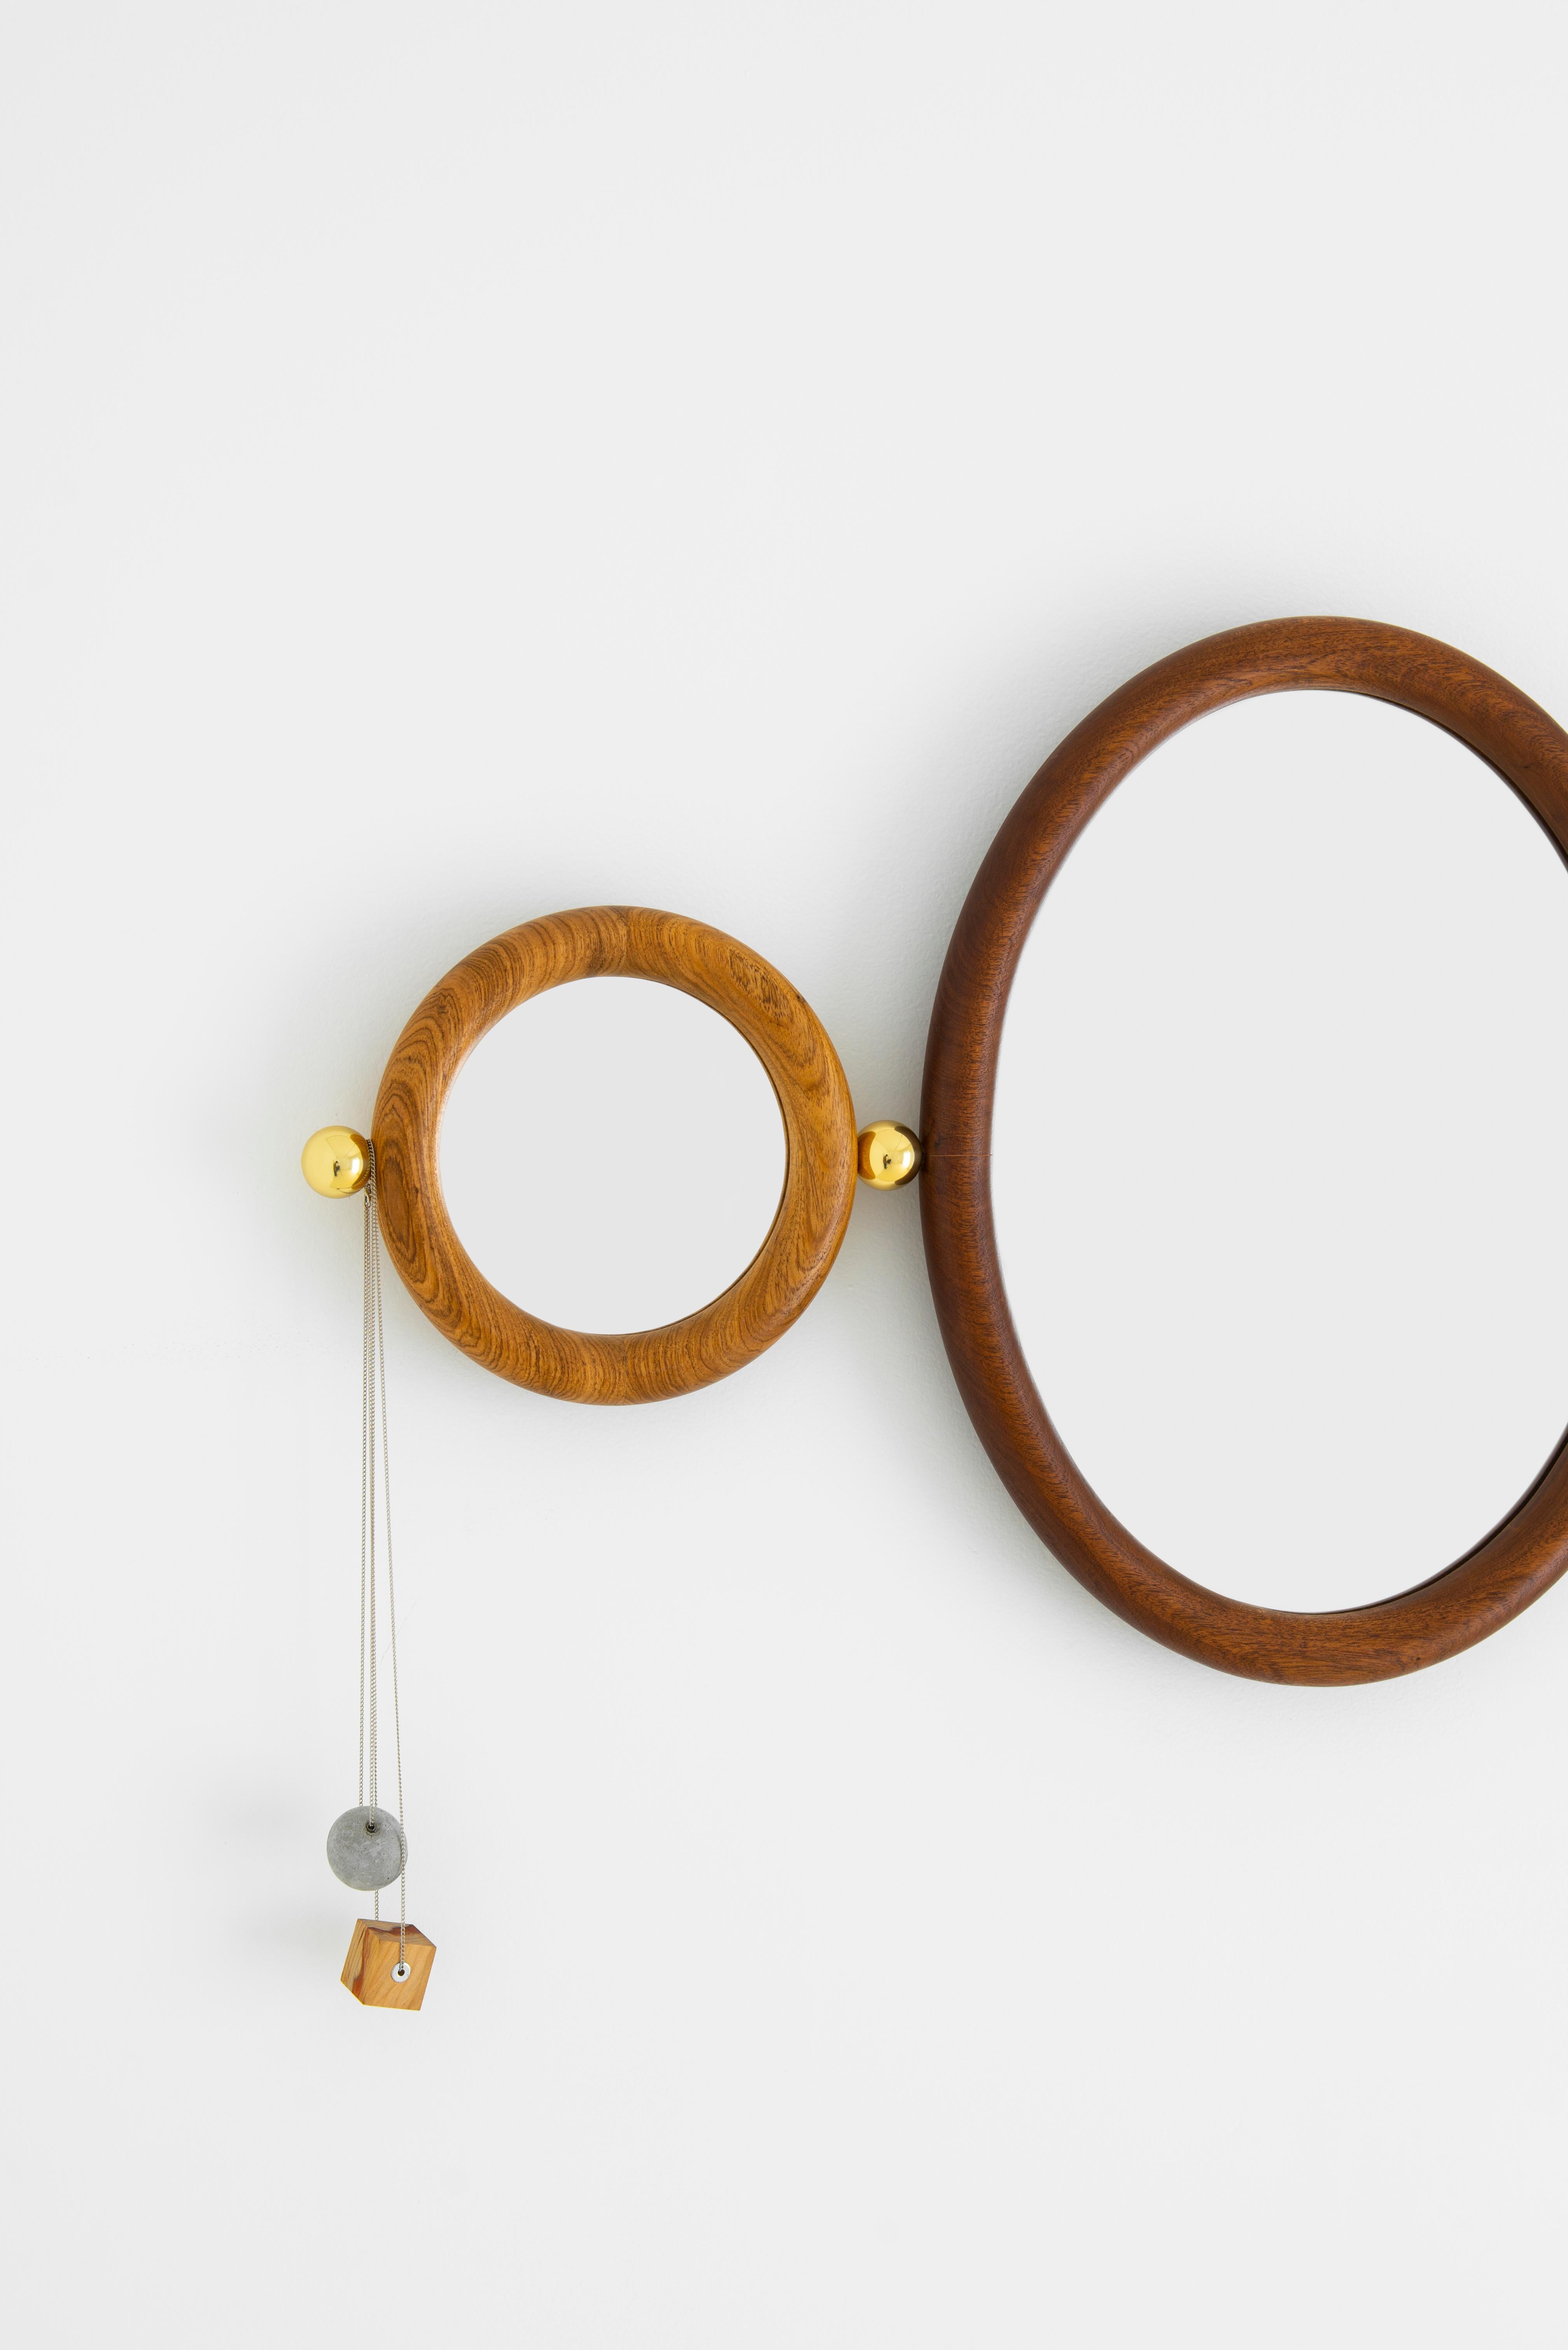 Aro Oval Mirror 55, Leandro Garcia, Contemporary Brazil Design 9